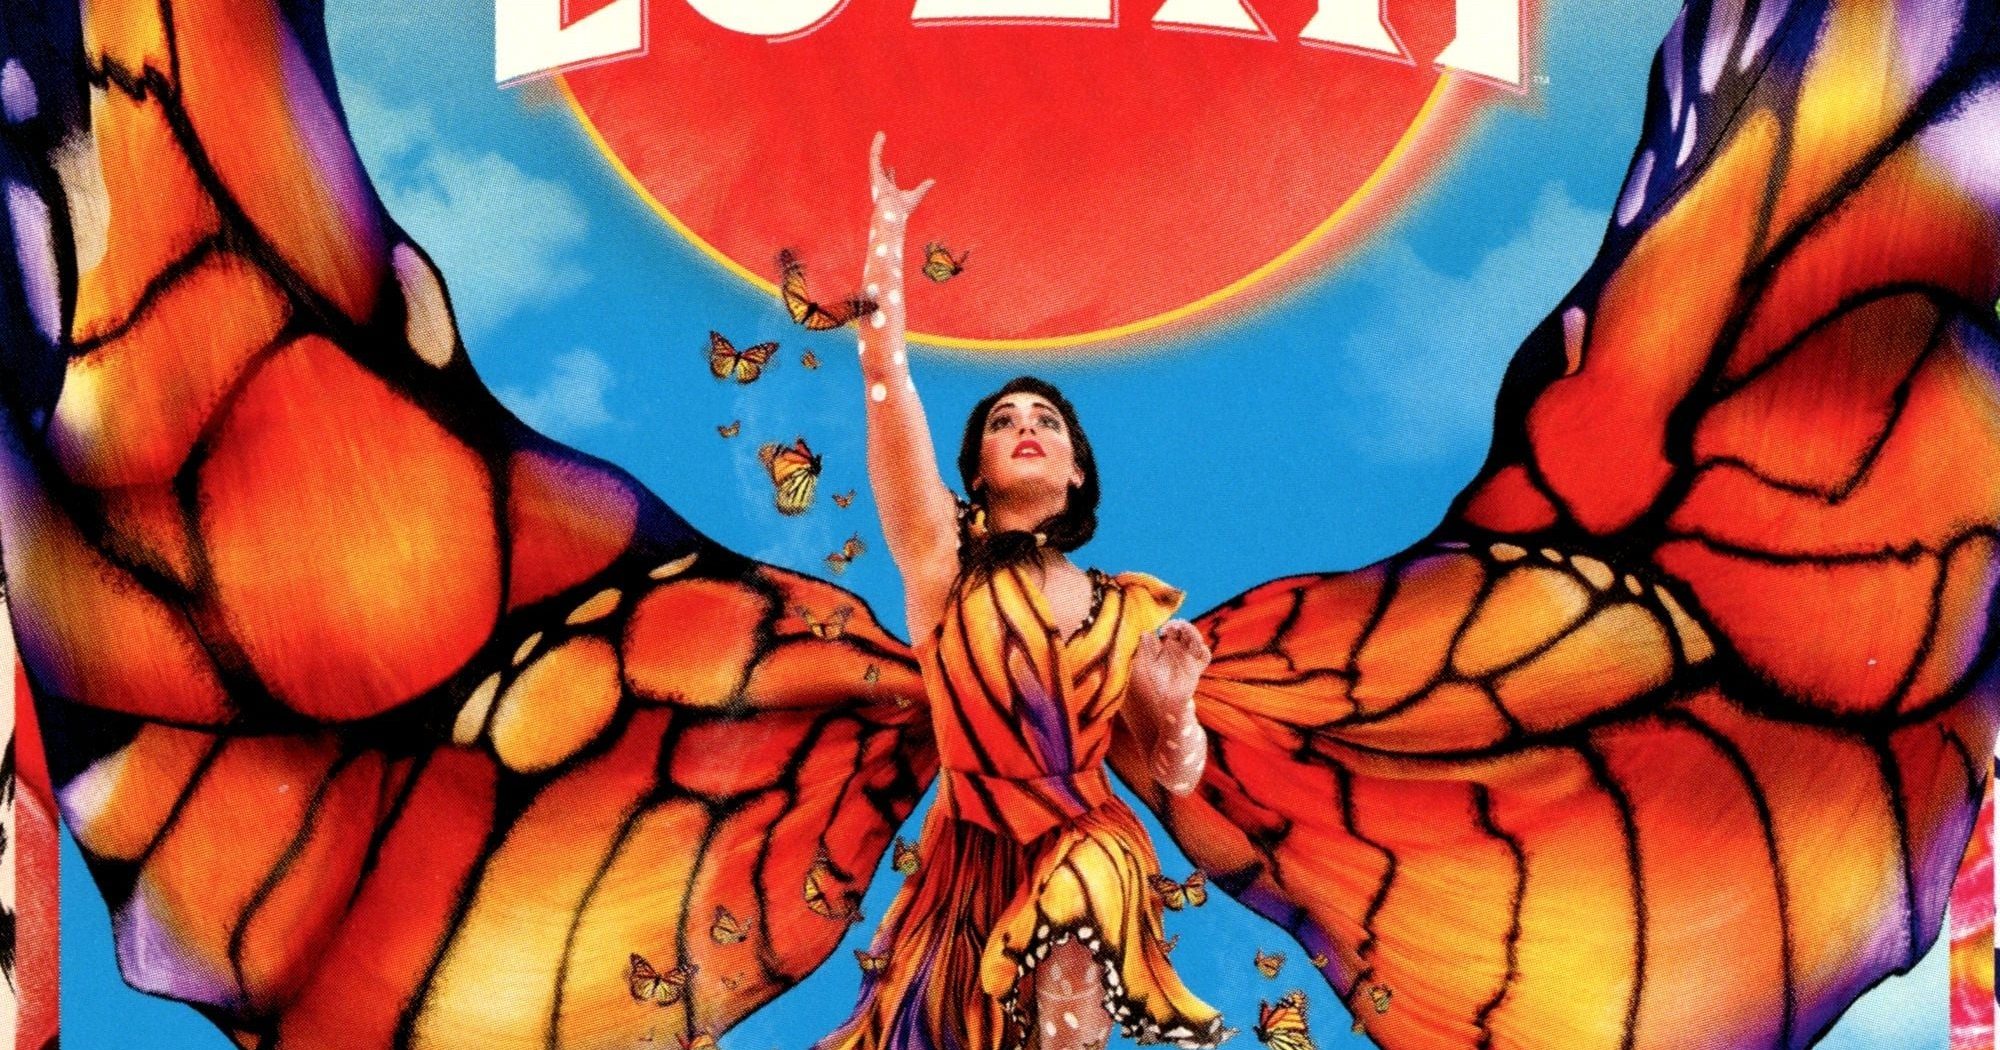 Poster for the movie "Cirque du Soleil :  Luzia"